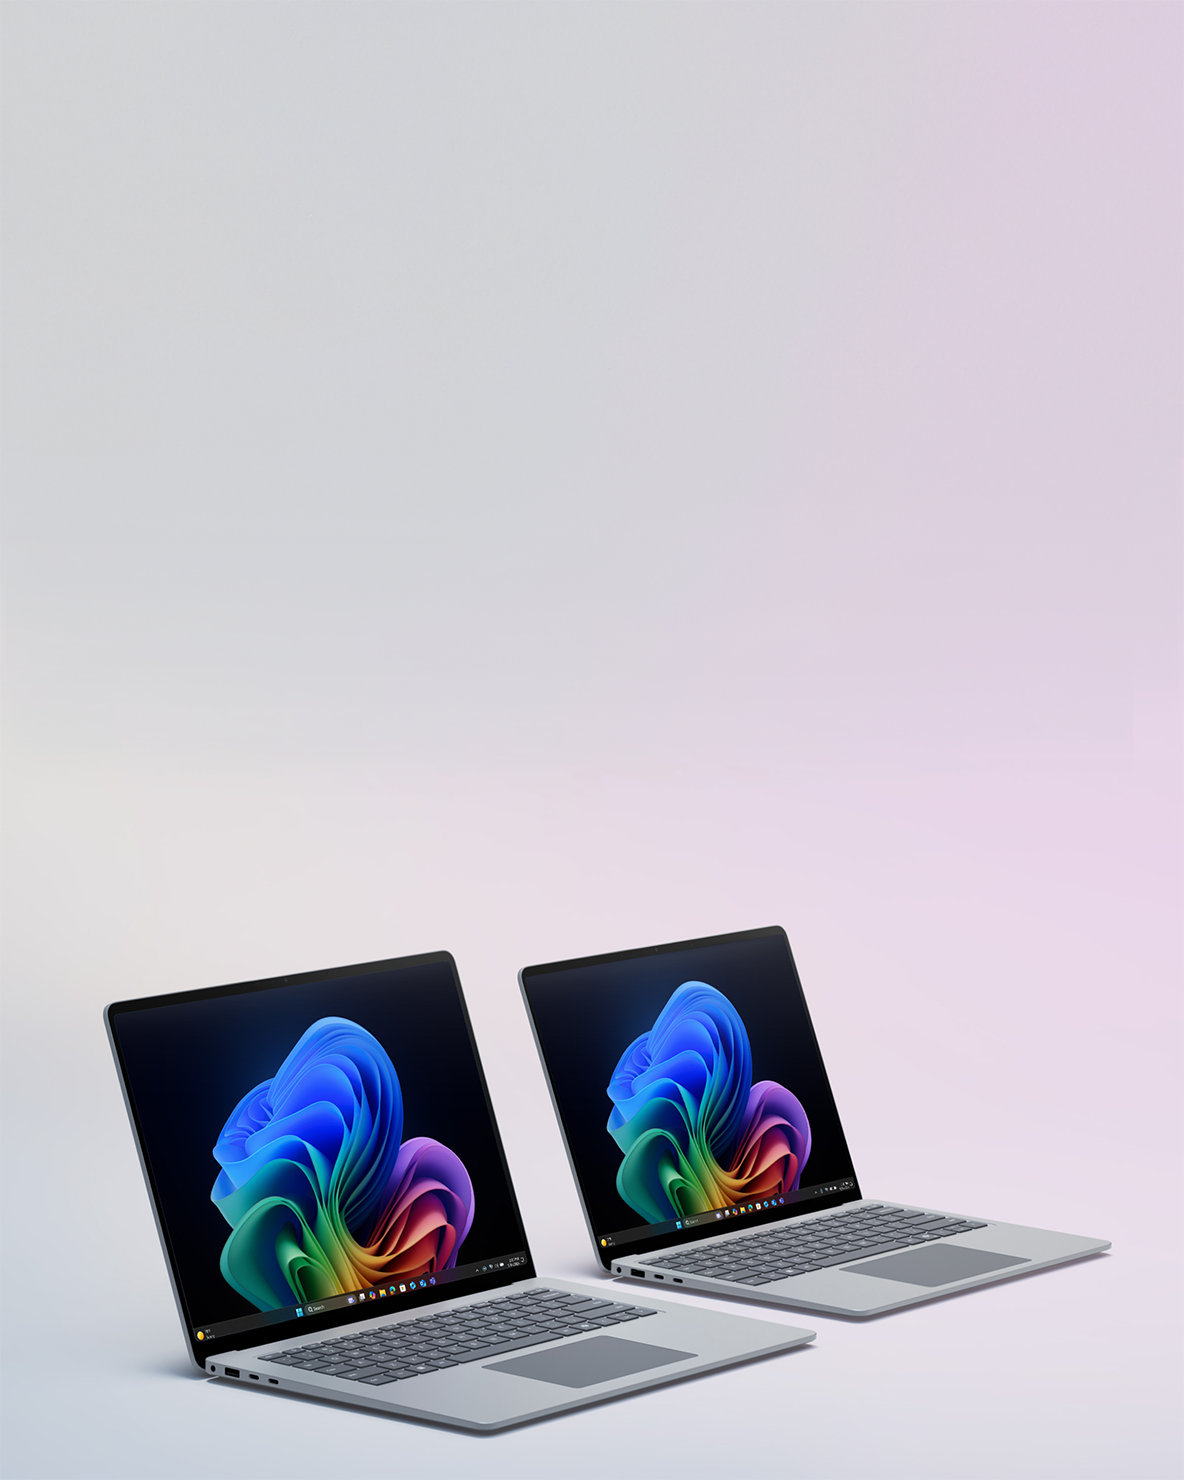 Imagen de dos dispositivos Surface Laptop, uno al lado del otro.